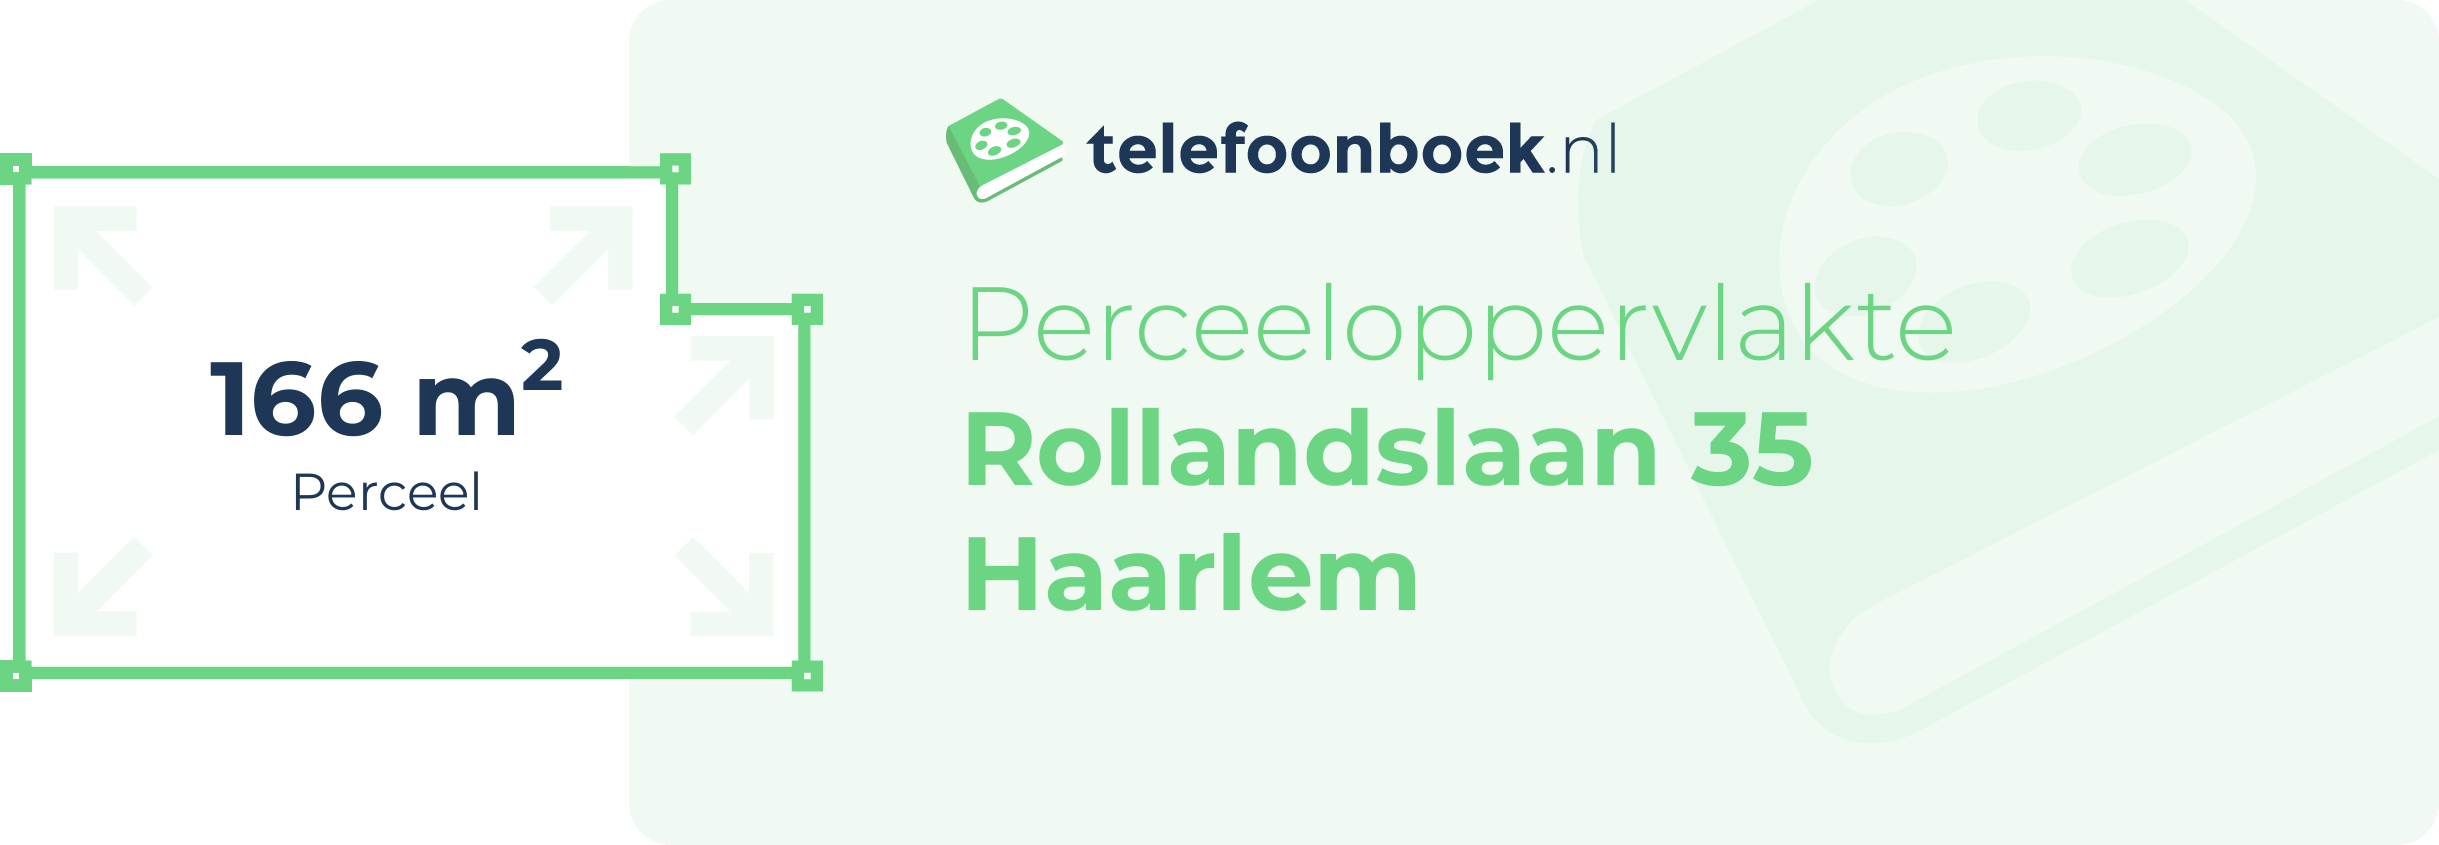 Perceeloppervlakte Rollandslaan 35 Haarlem